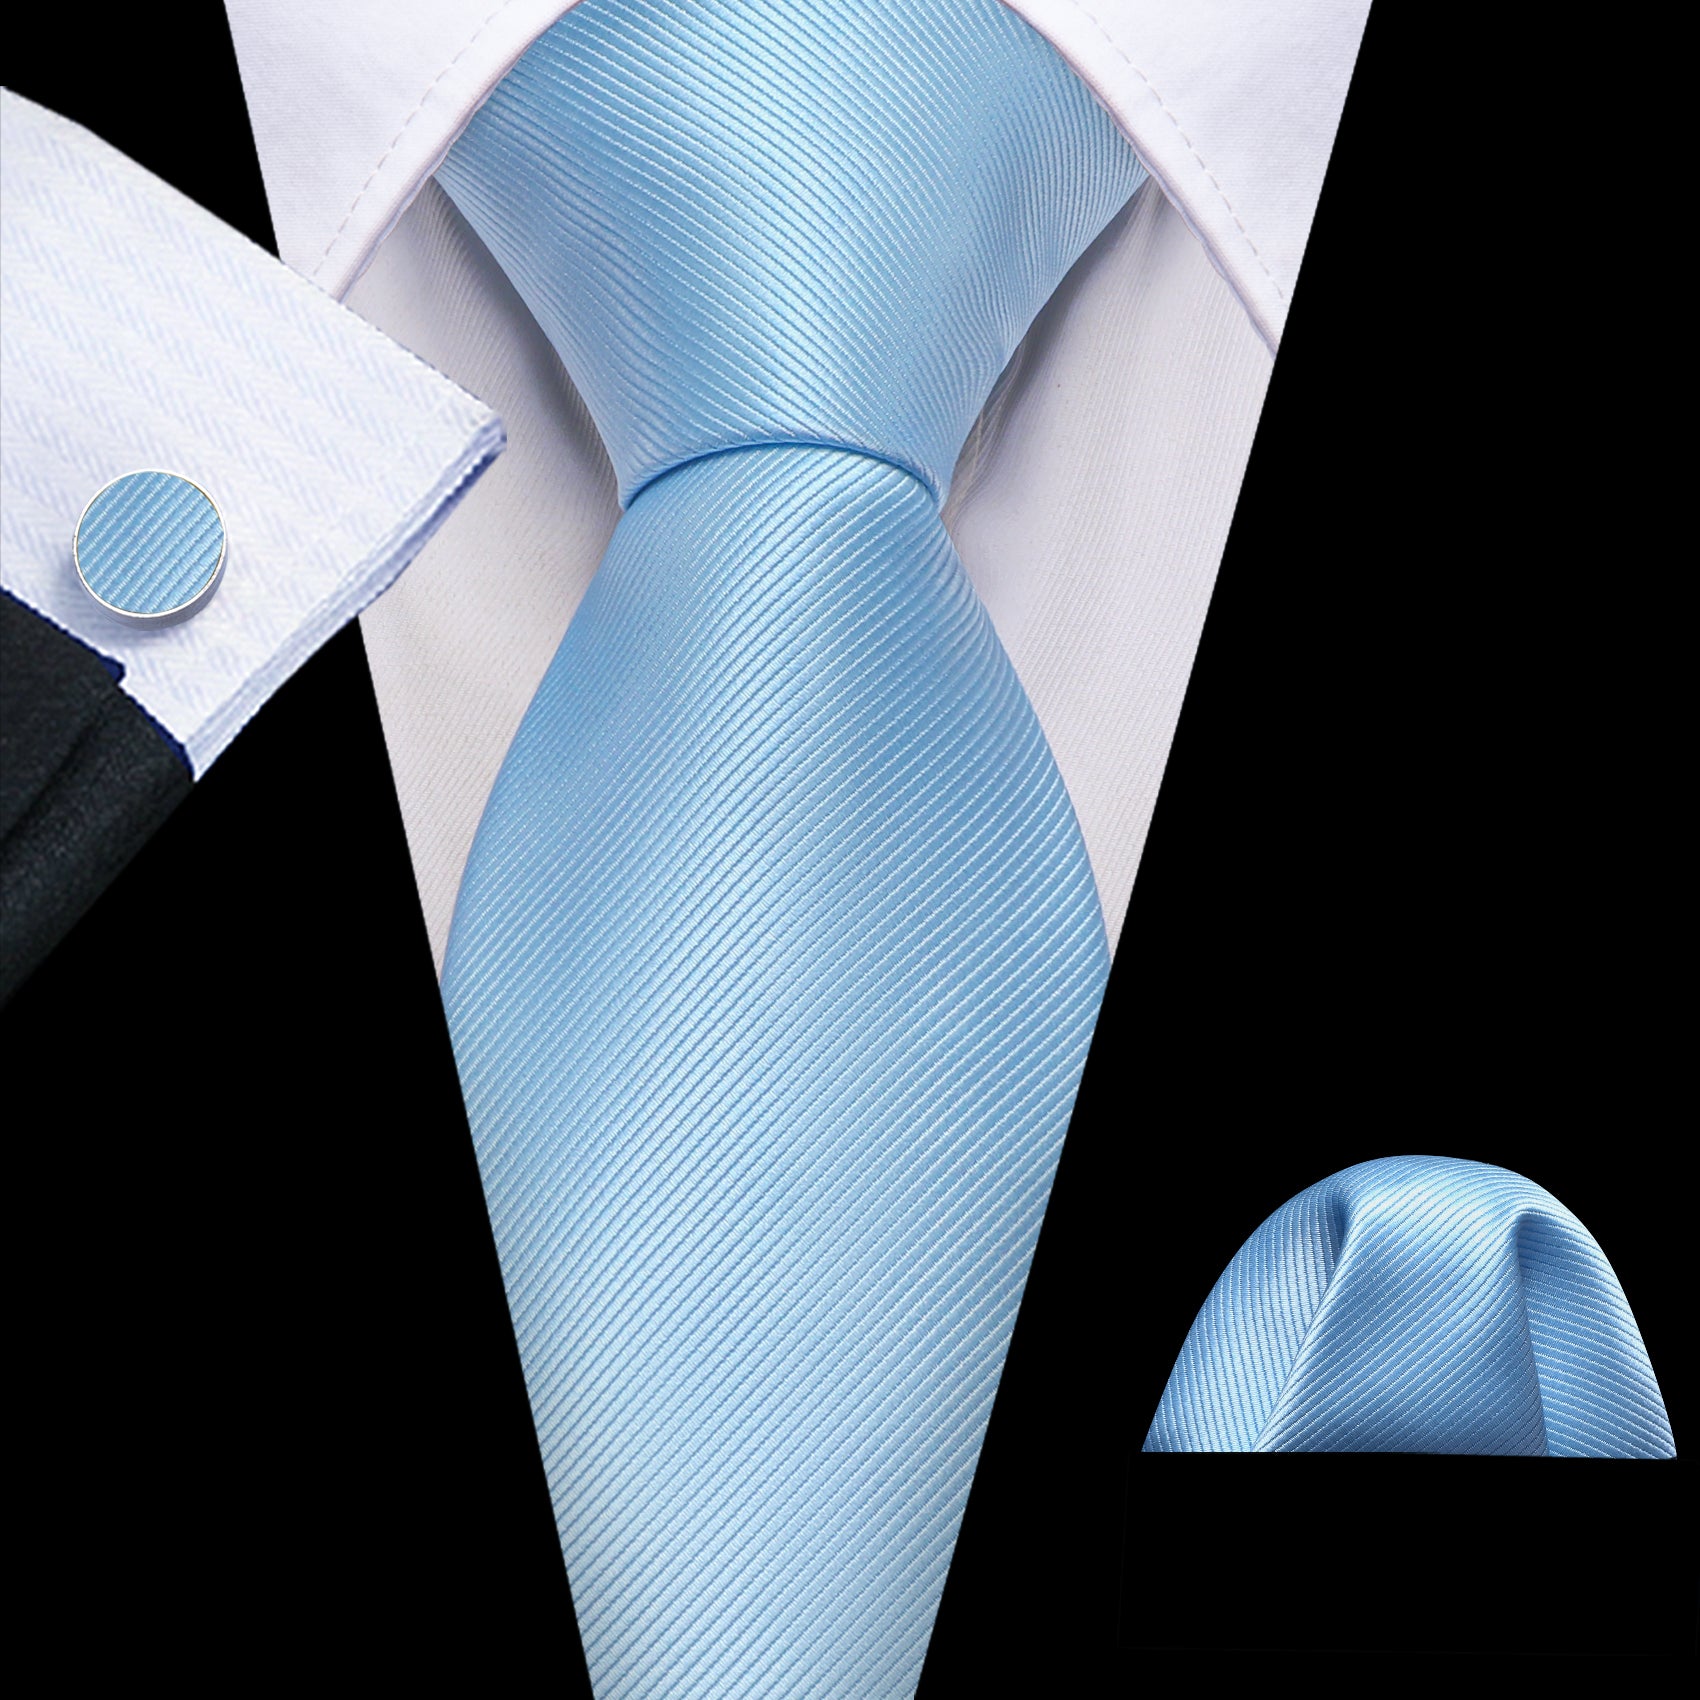 Pale Blue Solid Silk Tie Handkerchief Cufflinks Set